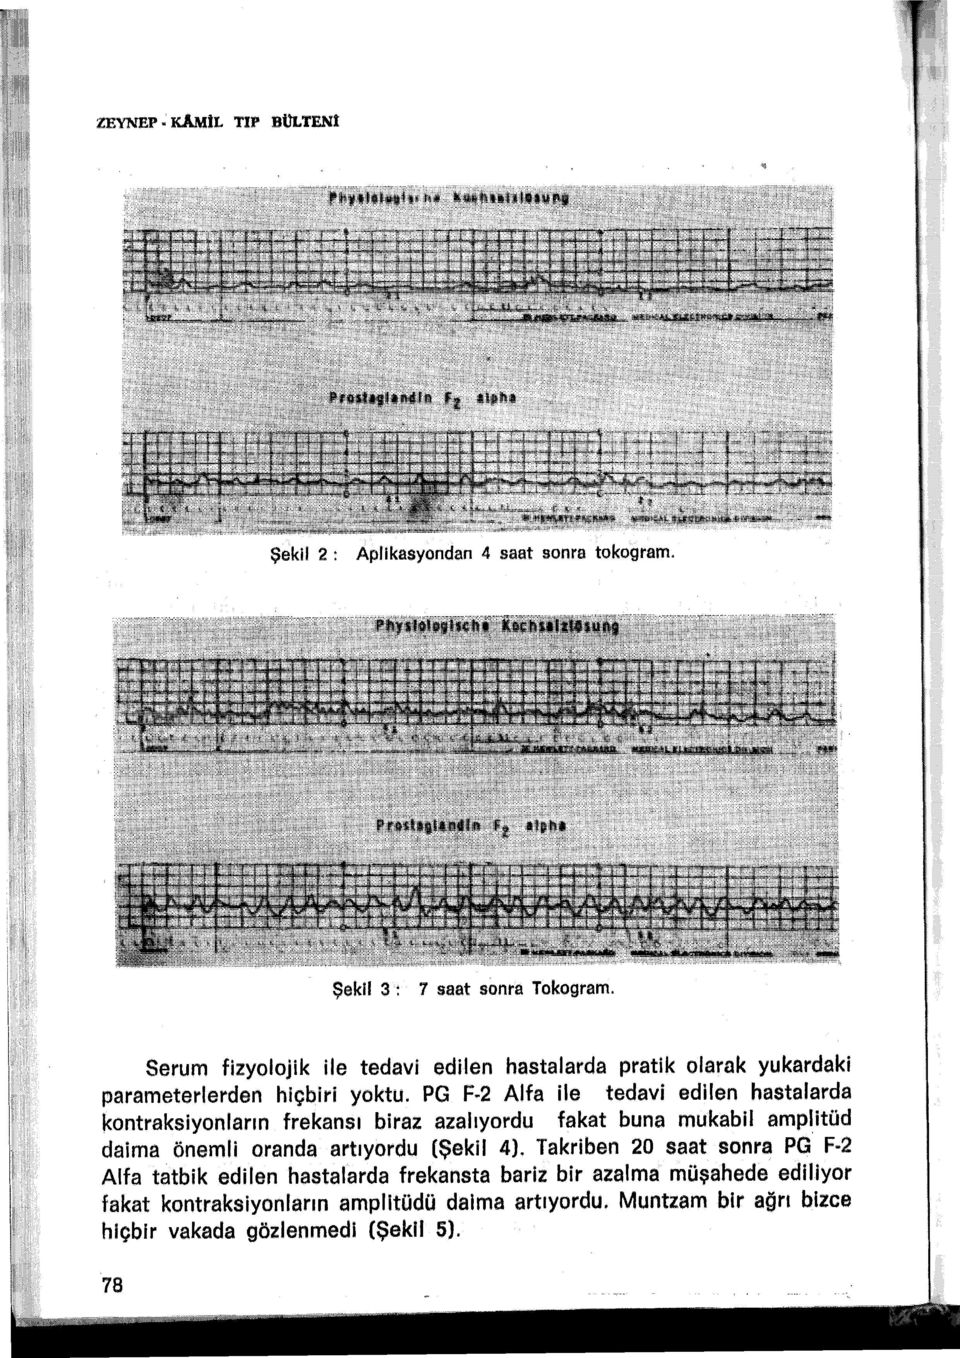 PG F 2 Alfa ile tedavi edilen hastalarda kontraksiyonlarm frekansı biraz azalıyordu fakat buna mukabil amplitüd daima önemli oranda :artıyordu